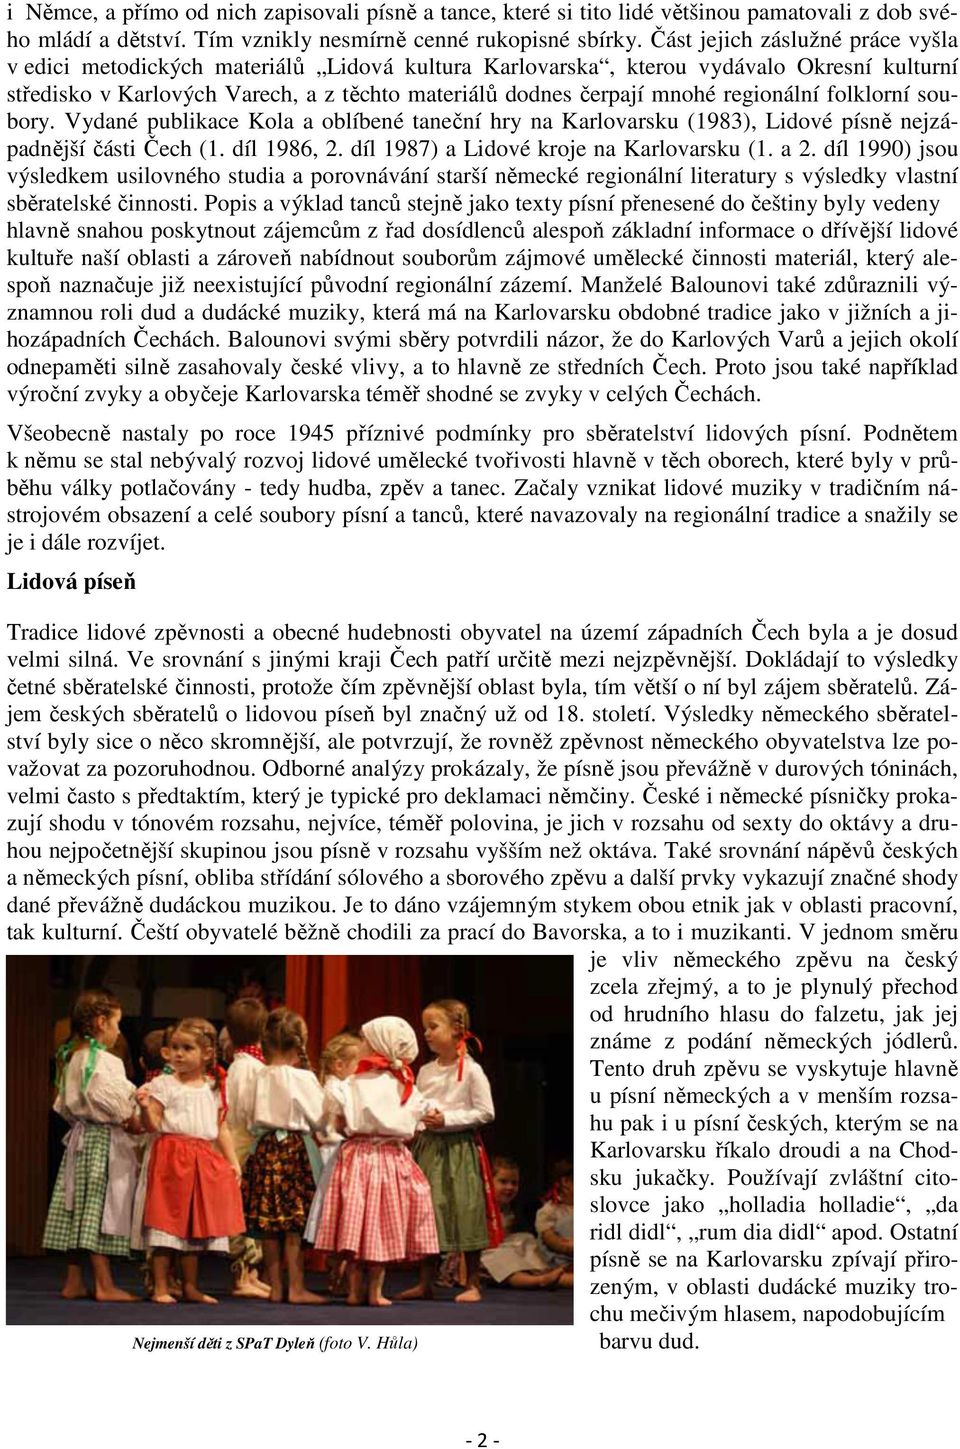 regionální folklorní soubory. Vydané publikace Kola a oblíbené taneční hry na Karlovarsku (1983), Lidové písně nejzápadnější části Čech (1. díl 1986, 2. díl 1987) a Lidové kroje na Karlovarsku (1.